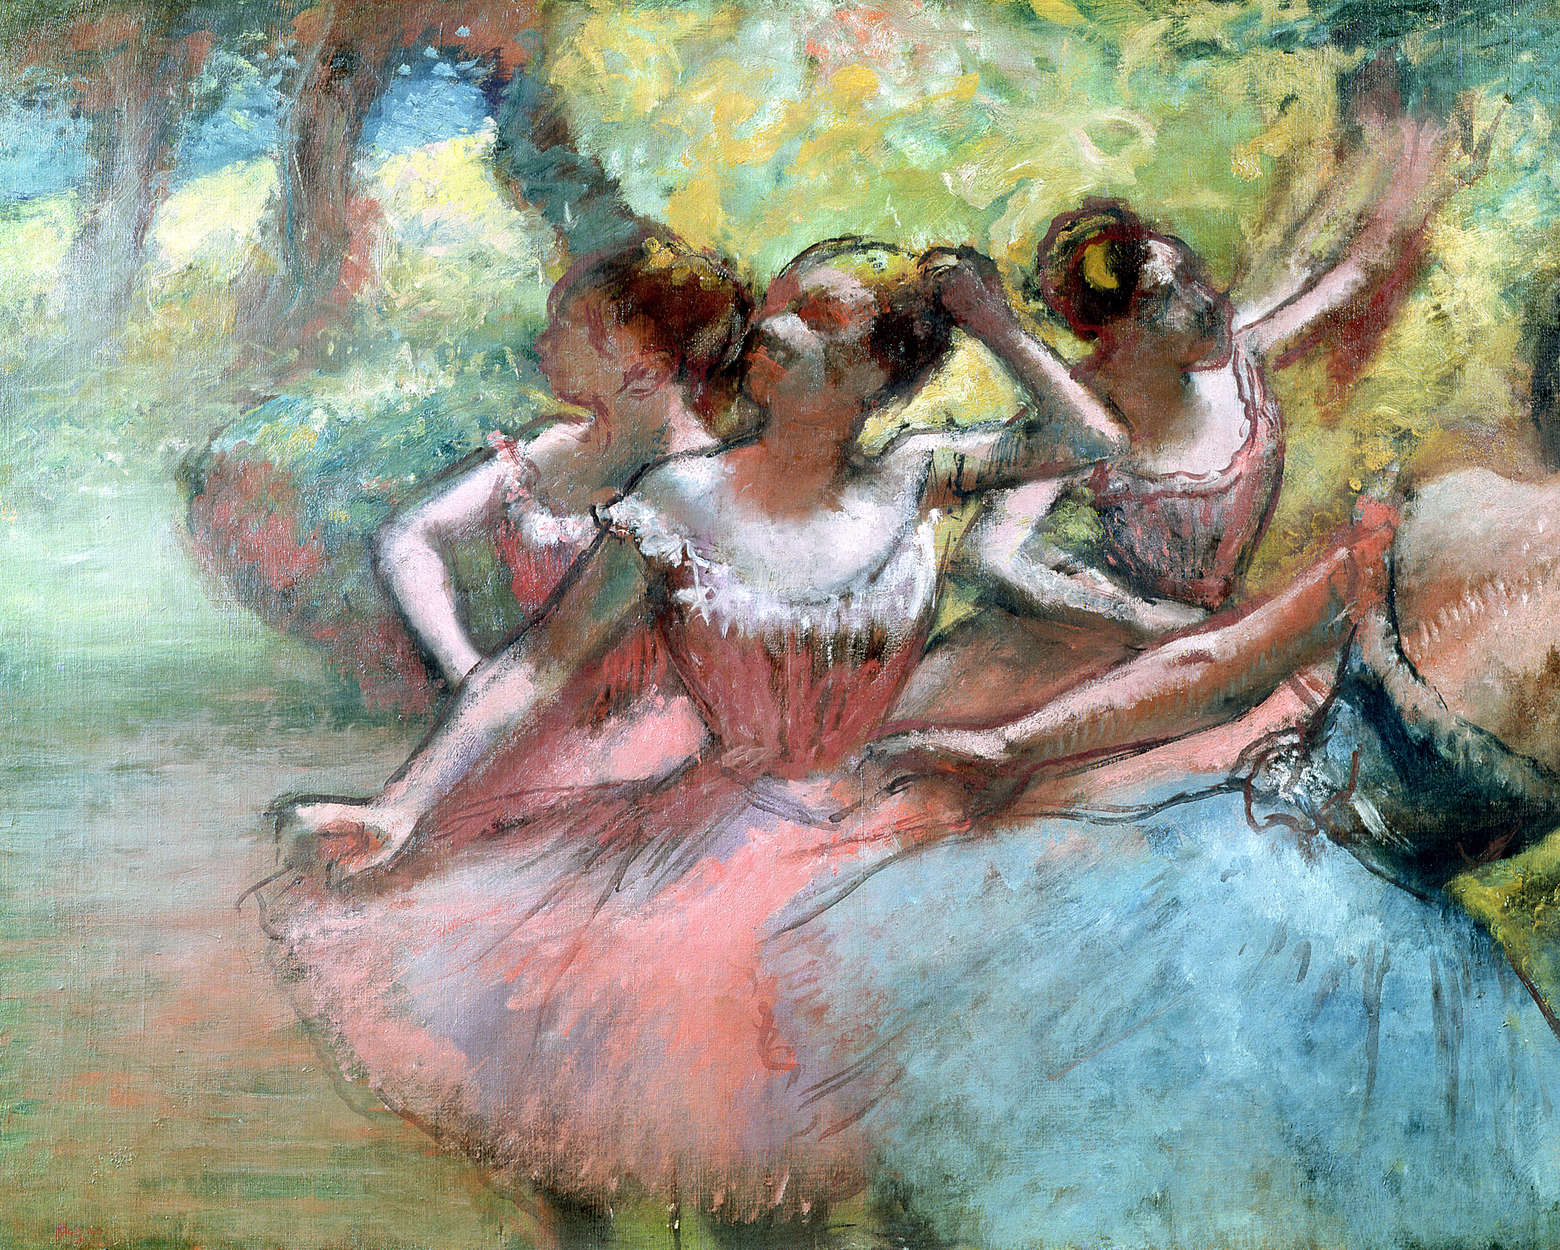             Vier ballerina's op het toneel" muurschildering van Hilaire Degas
        